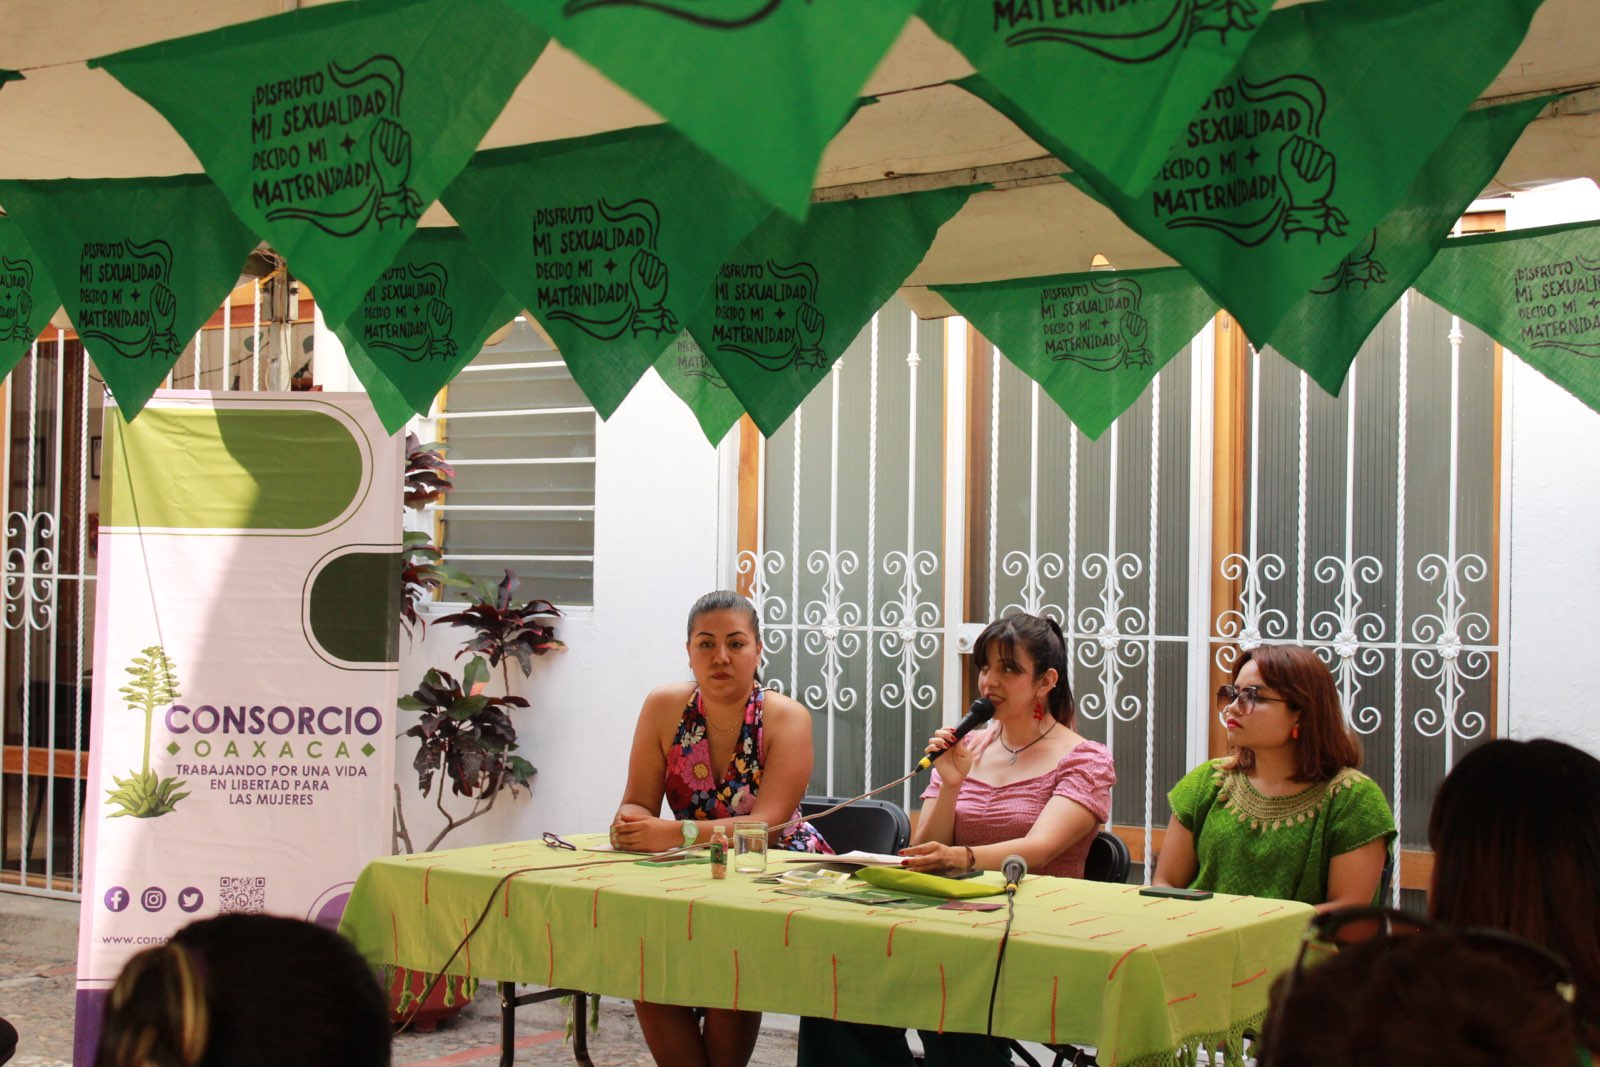 Arranca Consorcio Oaxaca campaña: “De la decisión a la acción ¡Aborto ya!”,  presentan “Botiquín de menjurjes que sostienen”